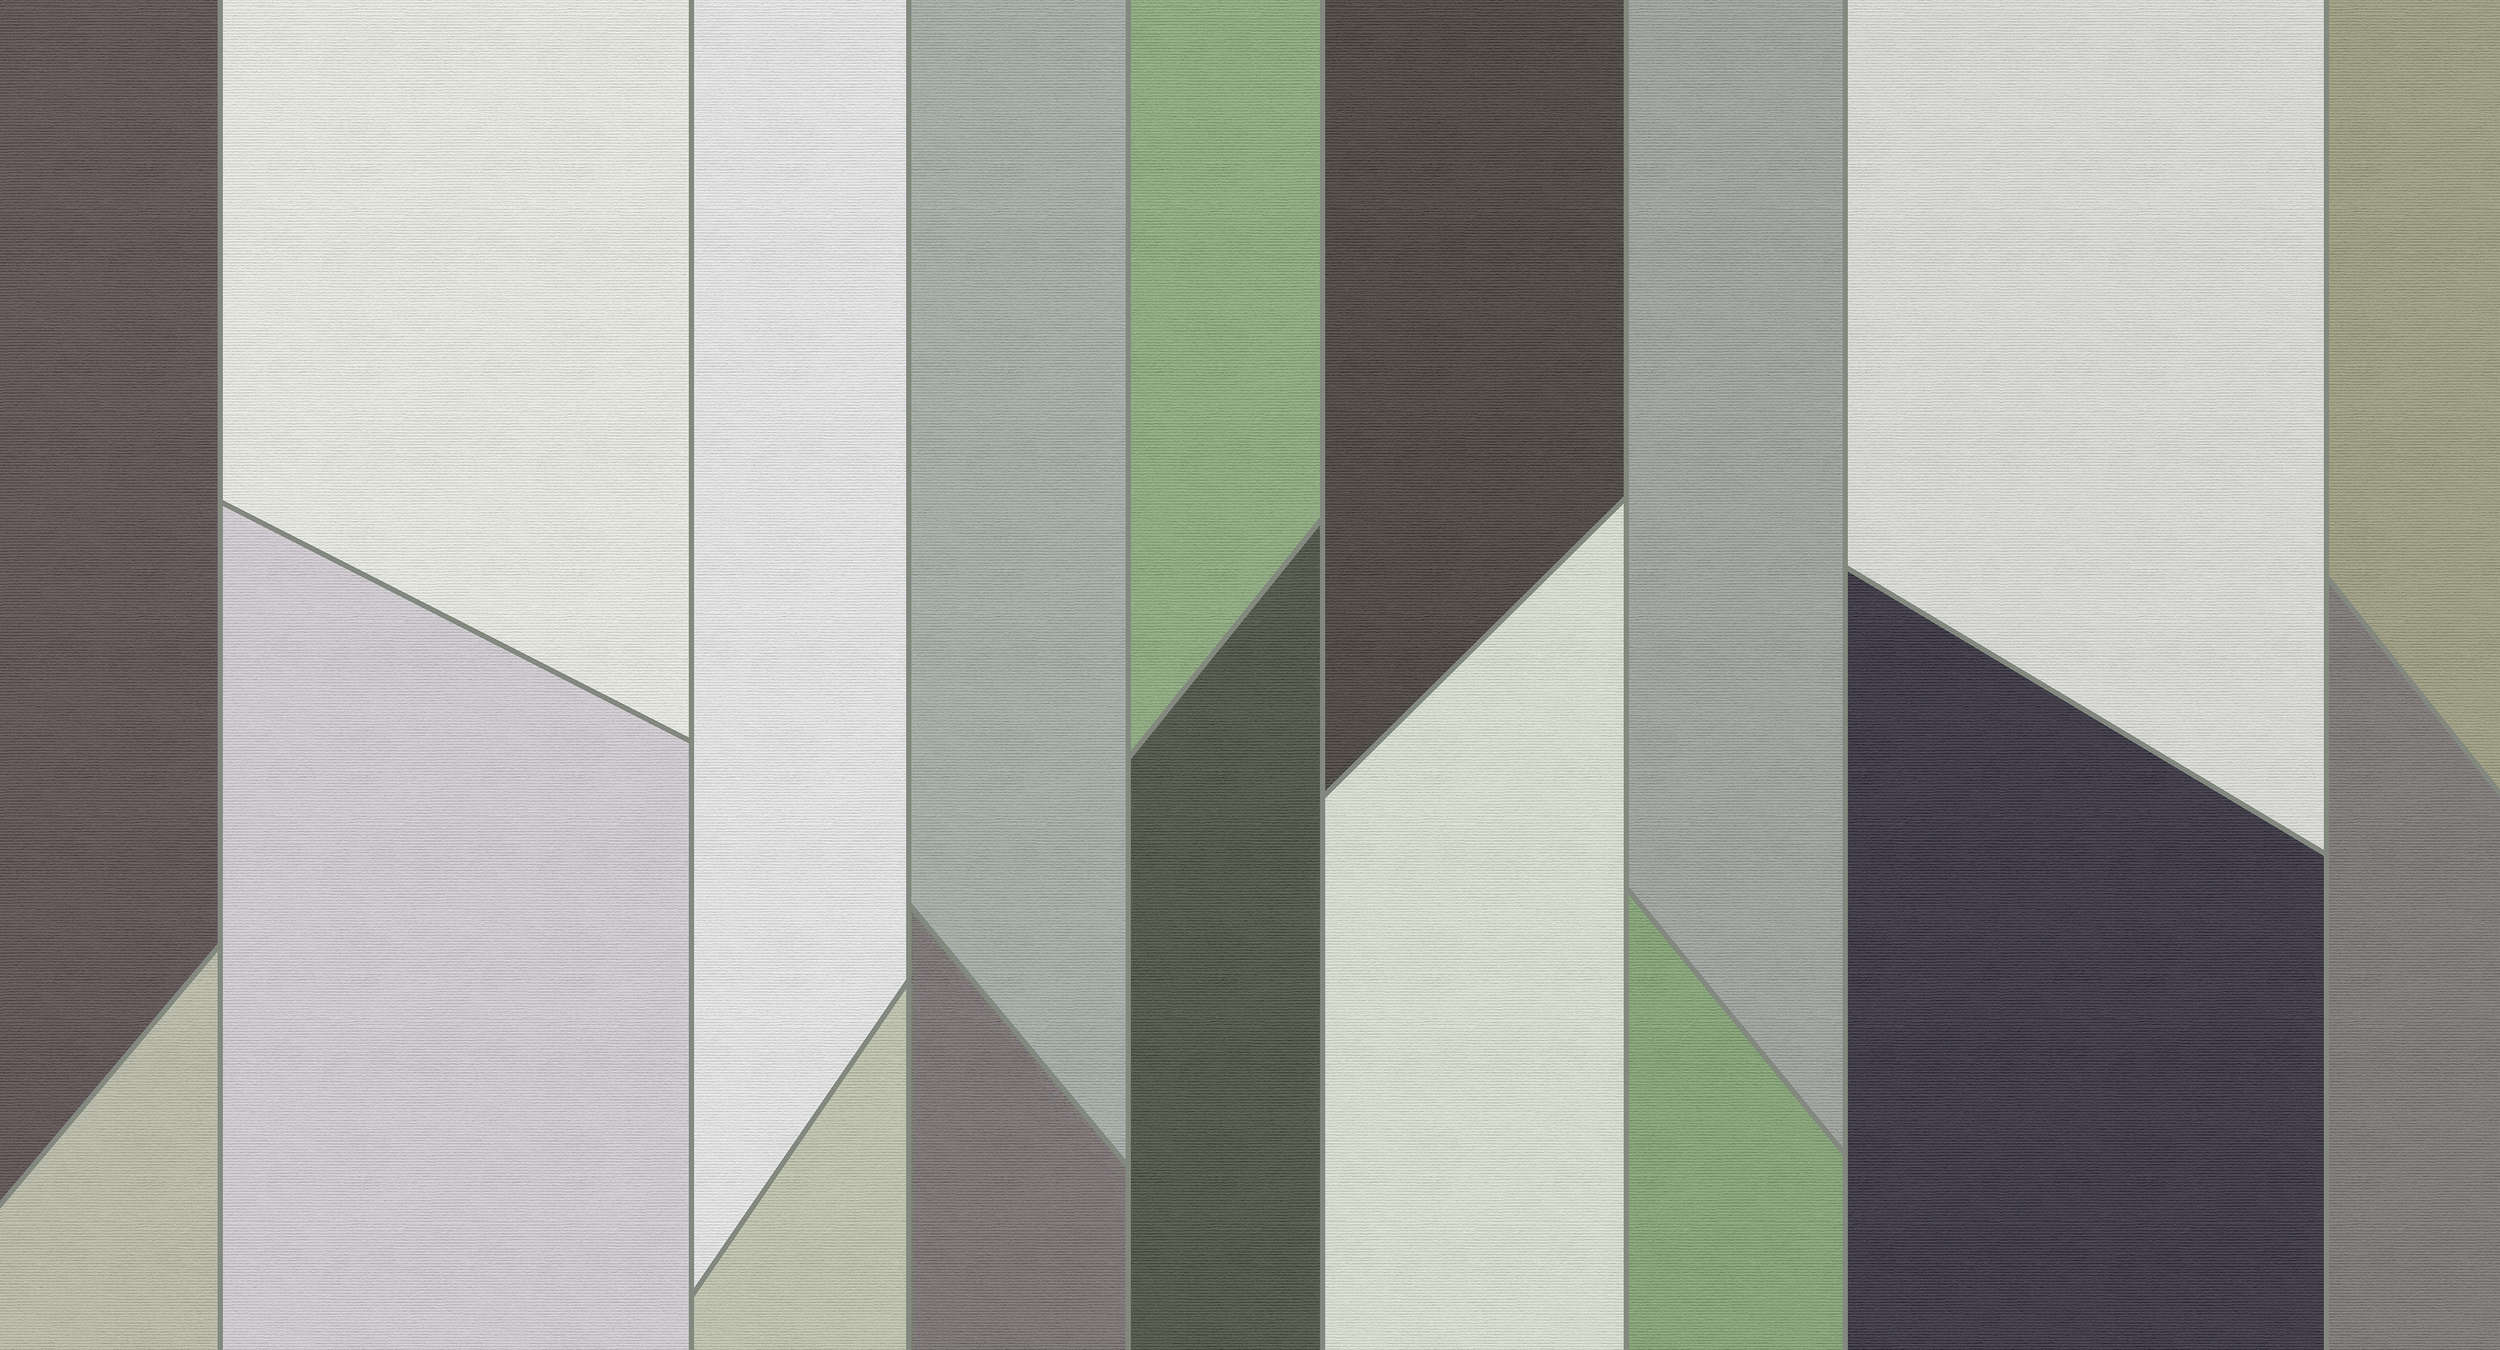             Geometry 3 - Papel pintado a rayas en estructura acanalada con diseño retro colorido - Verde, Violeta | Perla liso no tejido
        